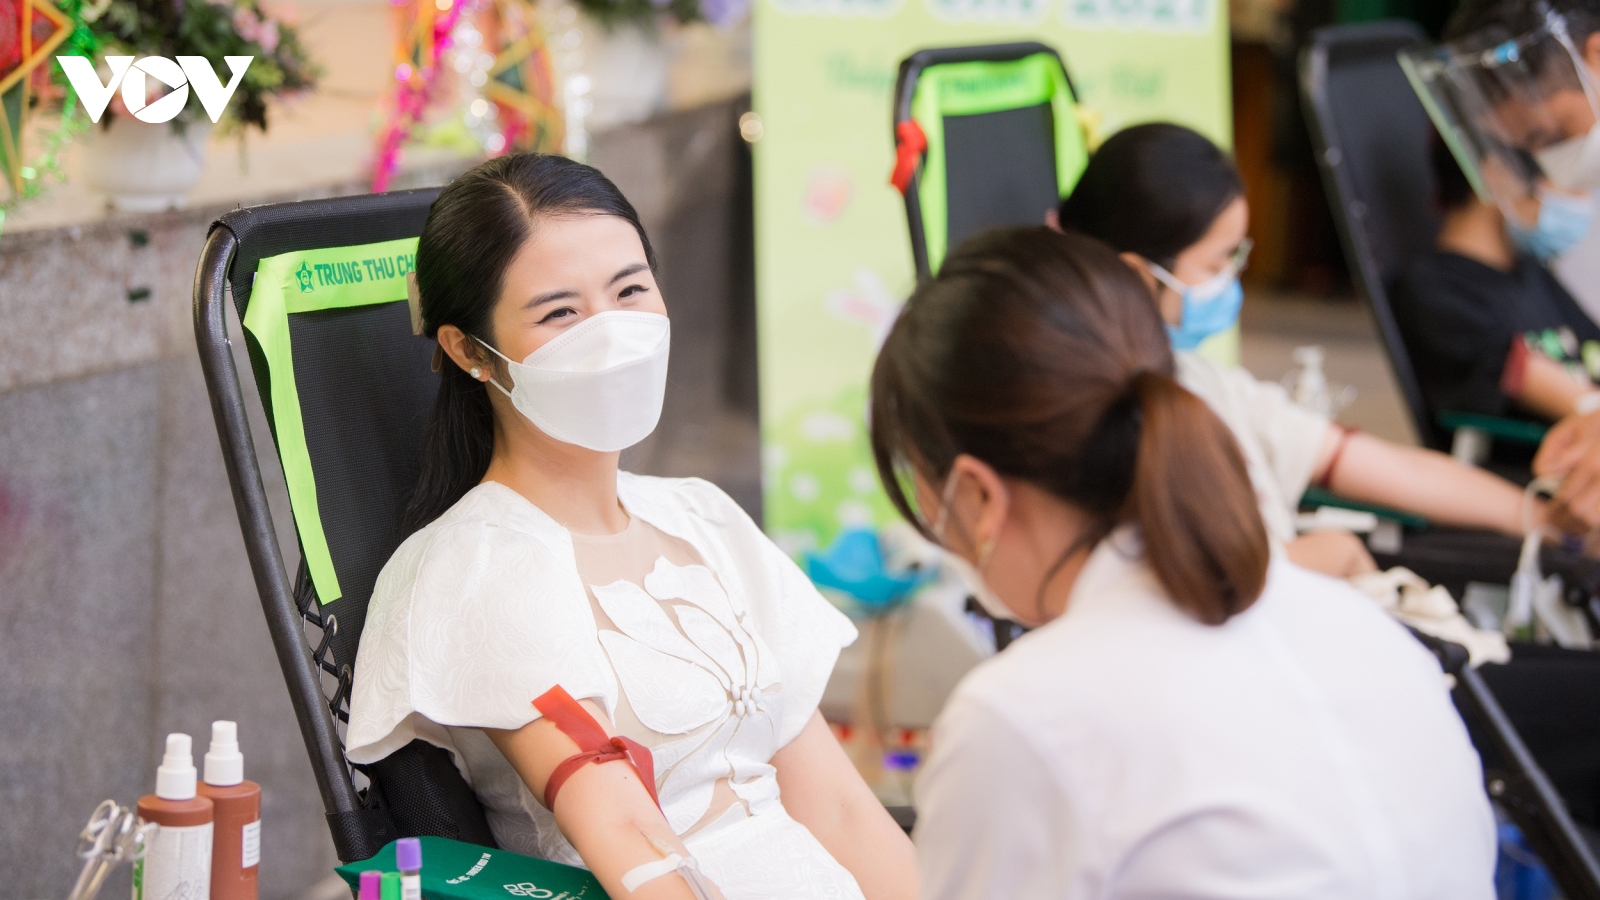 Hoa hậu Ngọc Hân đi hiến máu trong ngày đầu Hà Nội nới lỏng giãn cách